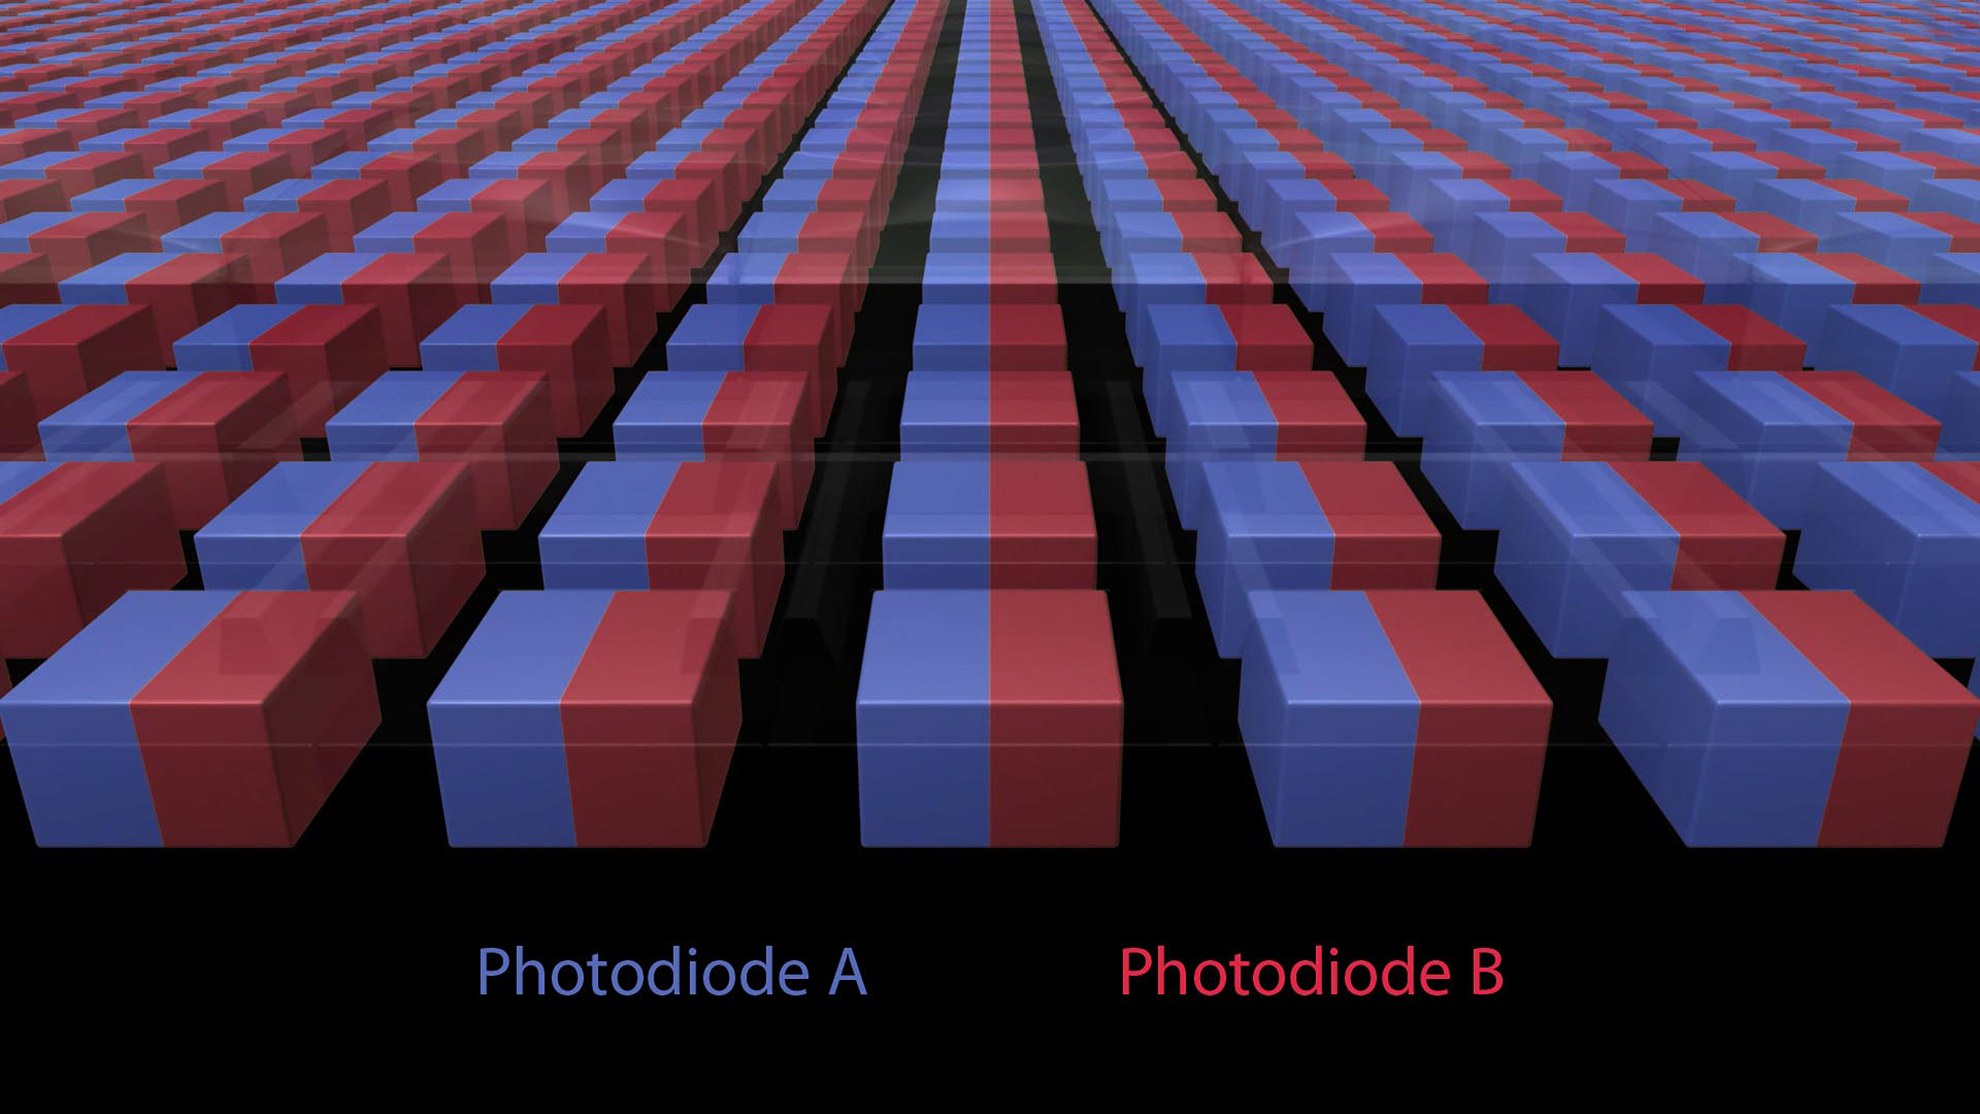 Photodiode A and Photodiode B